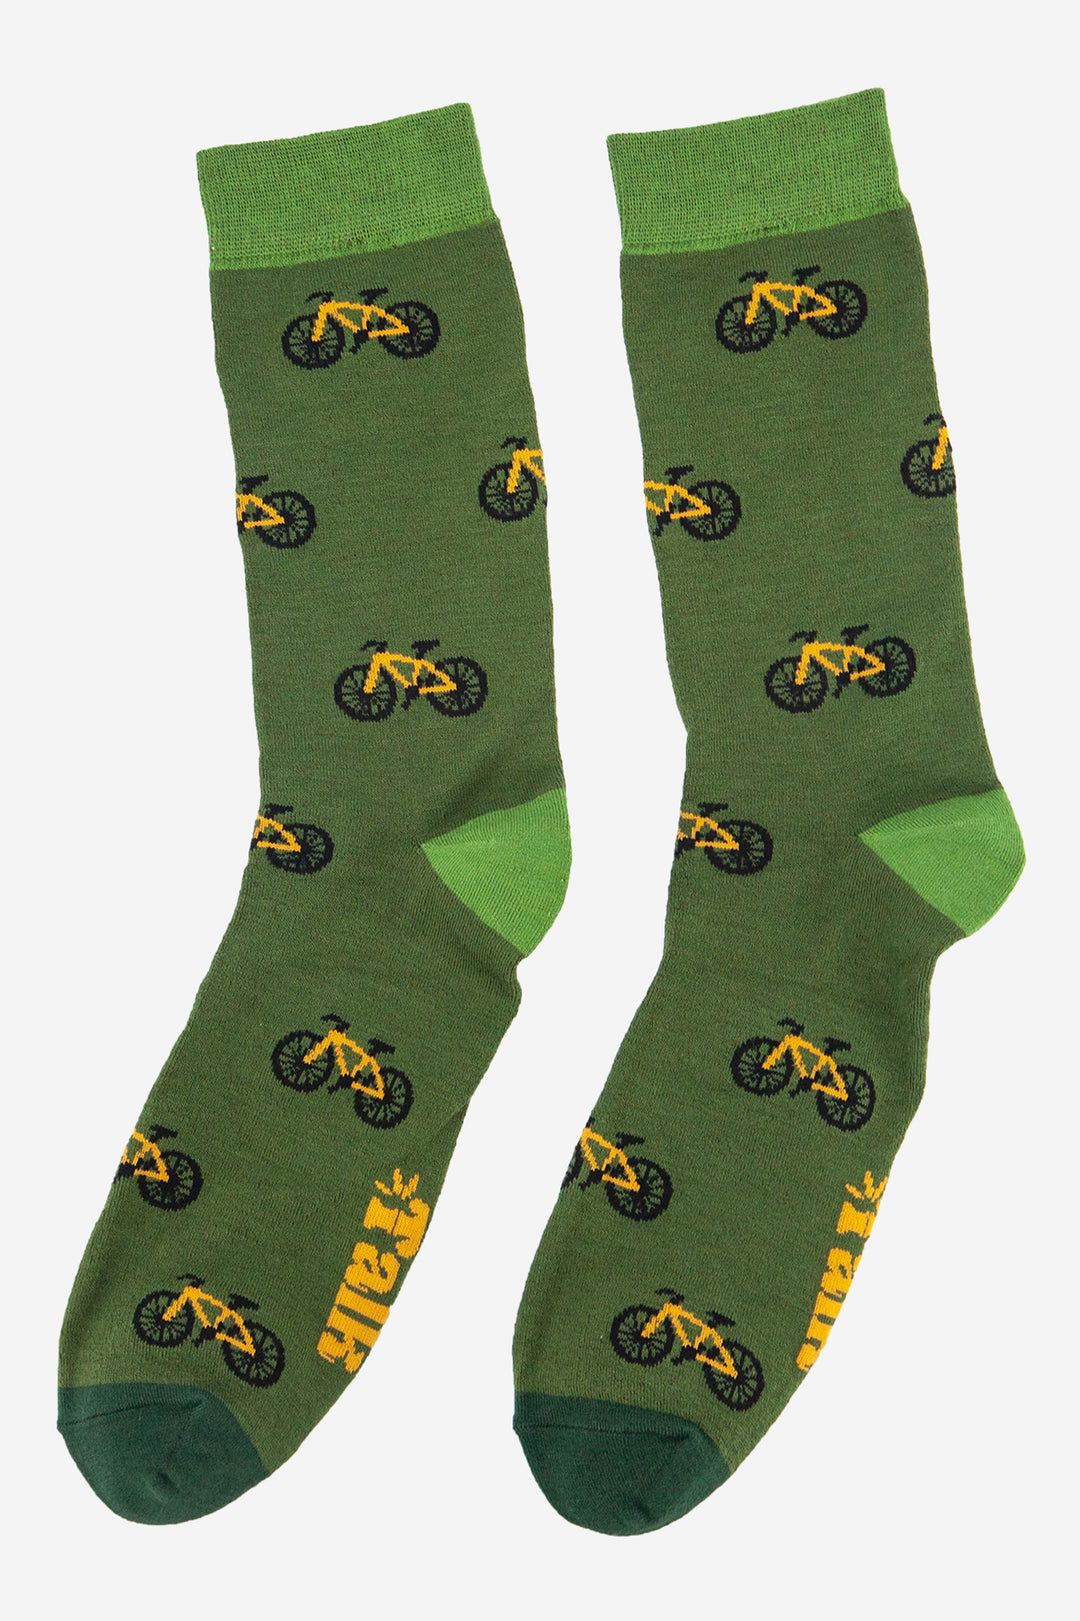 green mountain bike cycling socks for men